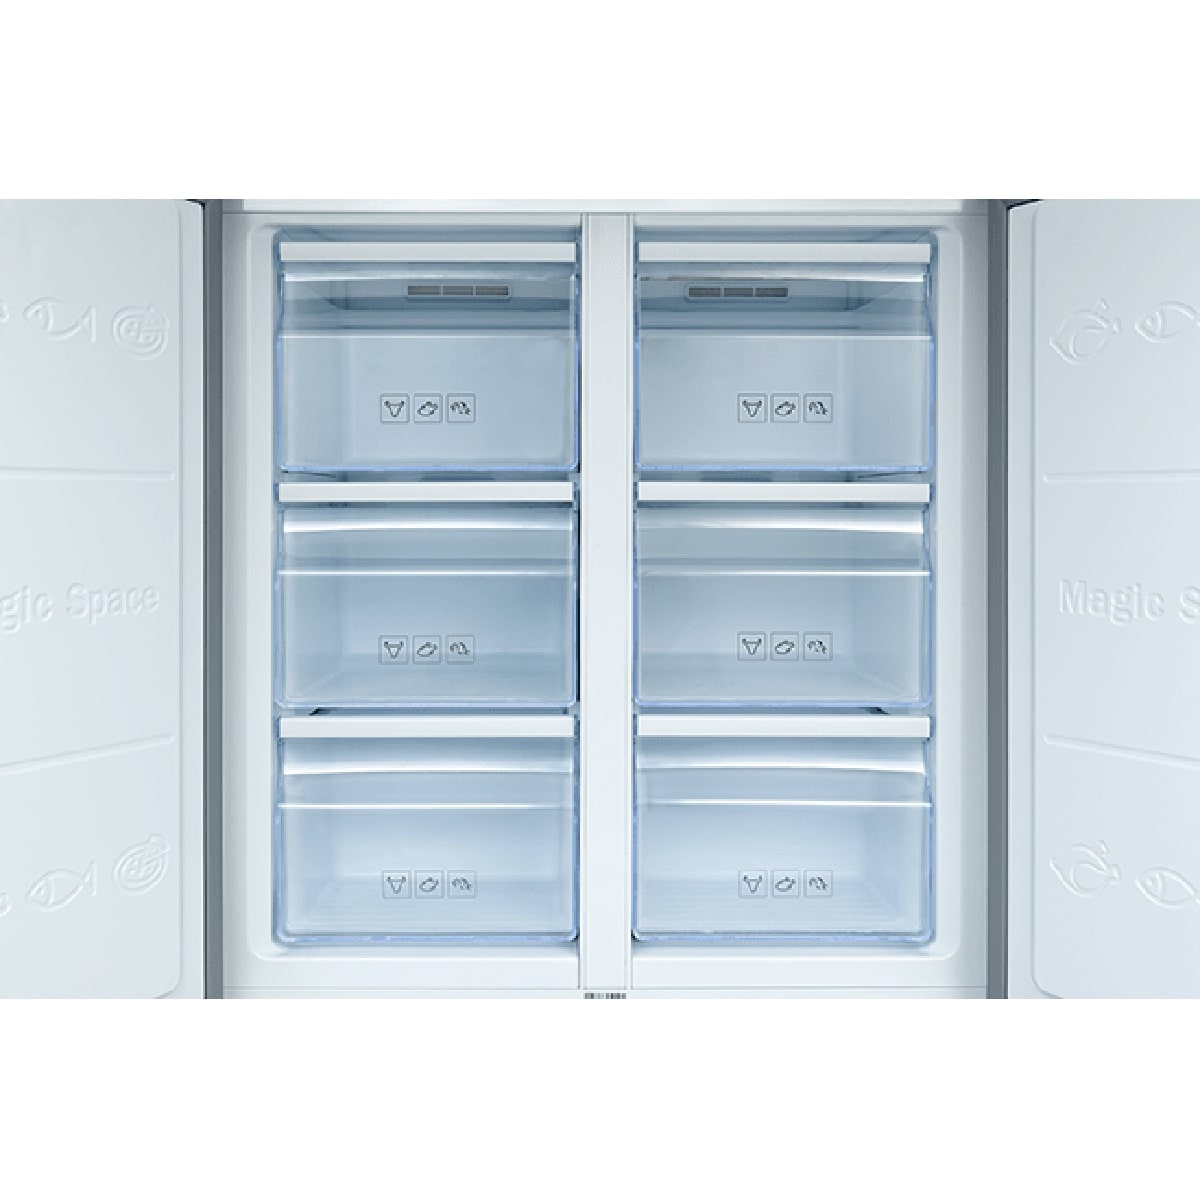 یخچال و فریزر ساید بای ساید ایکس ویژن مدل TF540 main 1 6